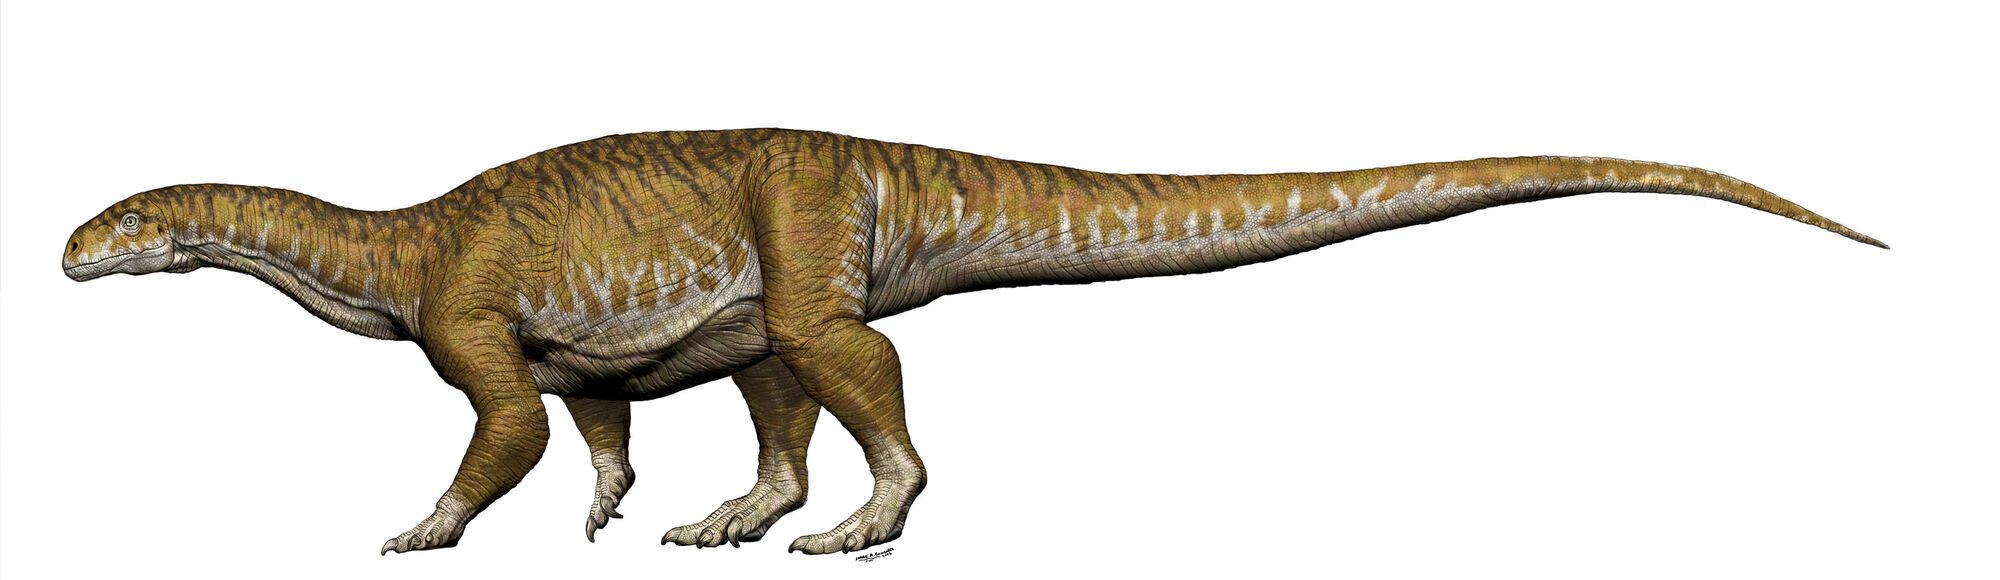 10 тонн: обнаружен новый вид гигантских динозавров